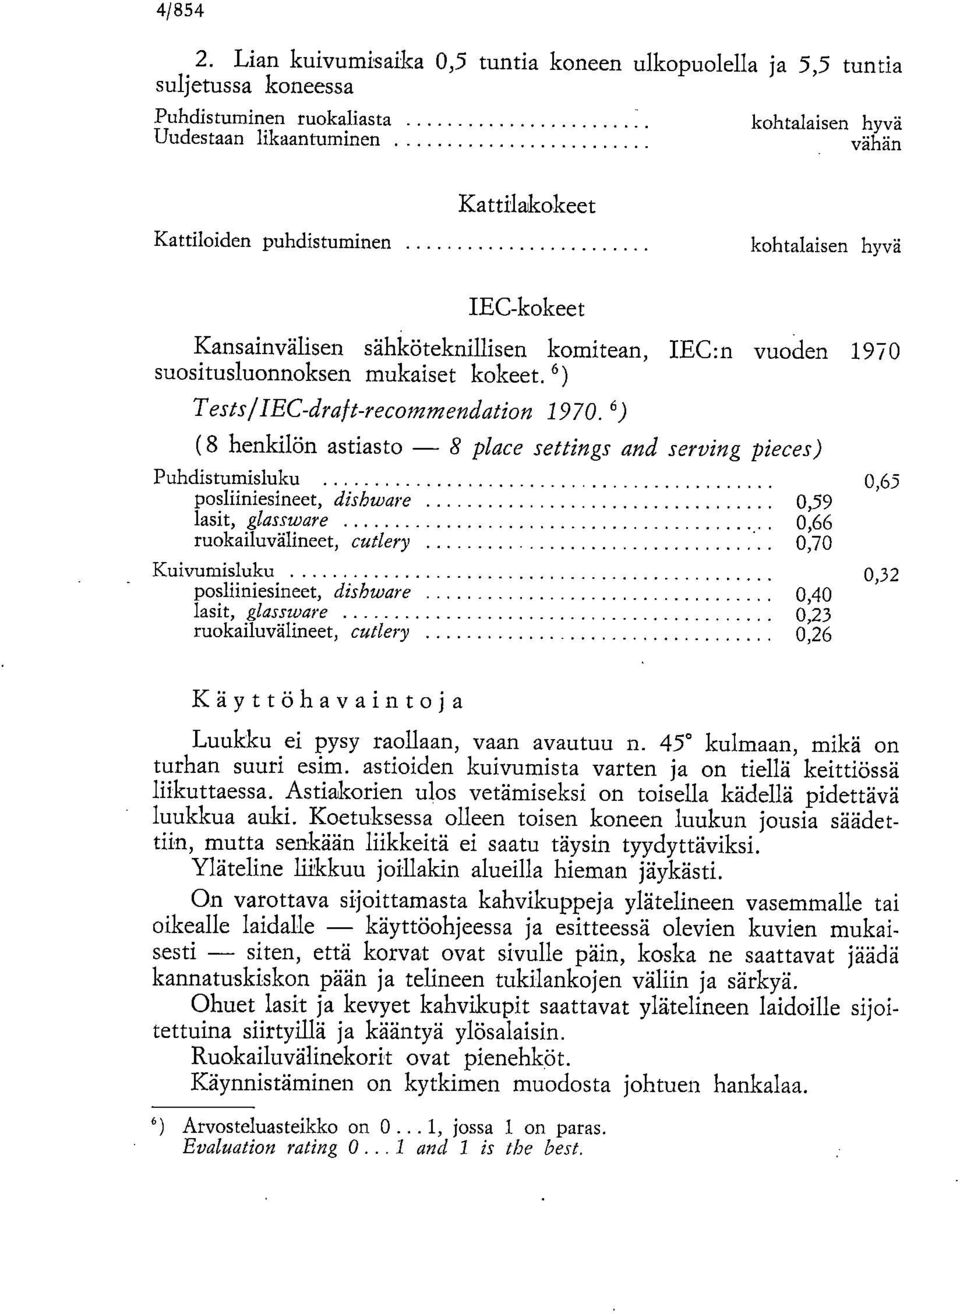 kohtalaisen hyvä IEC-kokeet Kansainvälisen sähköteknillisen komitean, IEC:n vuoden 1970 suositusluonnoksen mukaiset kokeet. 6) Tests IIEC-draft-recommendation 1970.